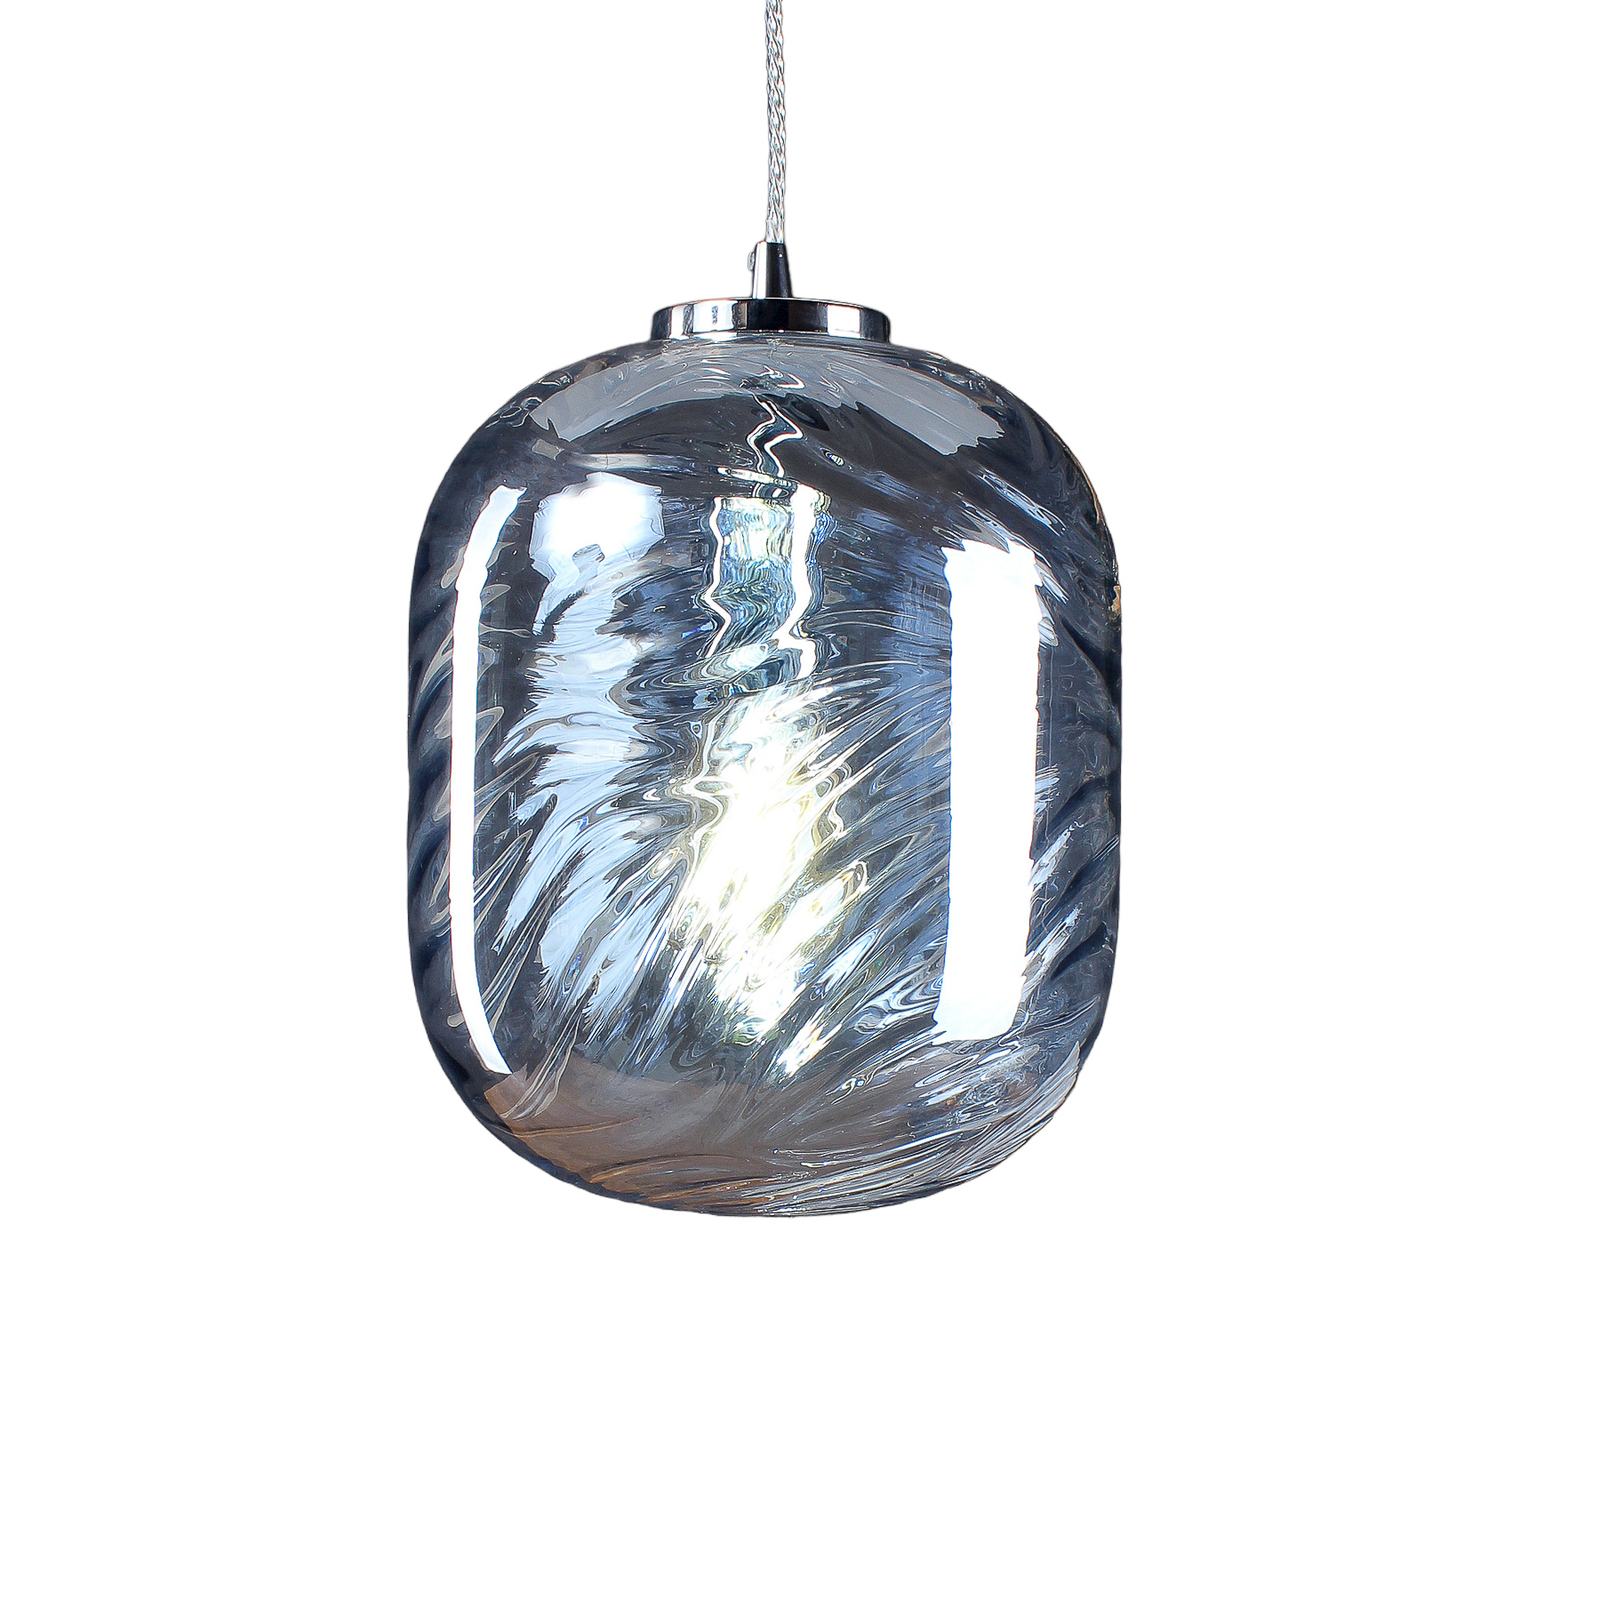 Hanglamp Nereide, glas grijs-blauw